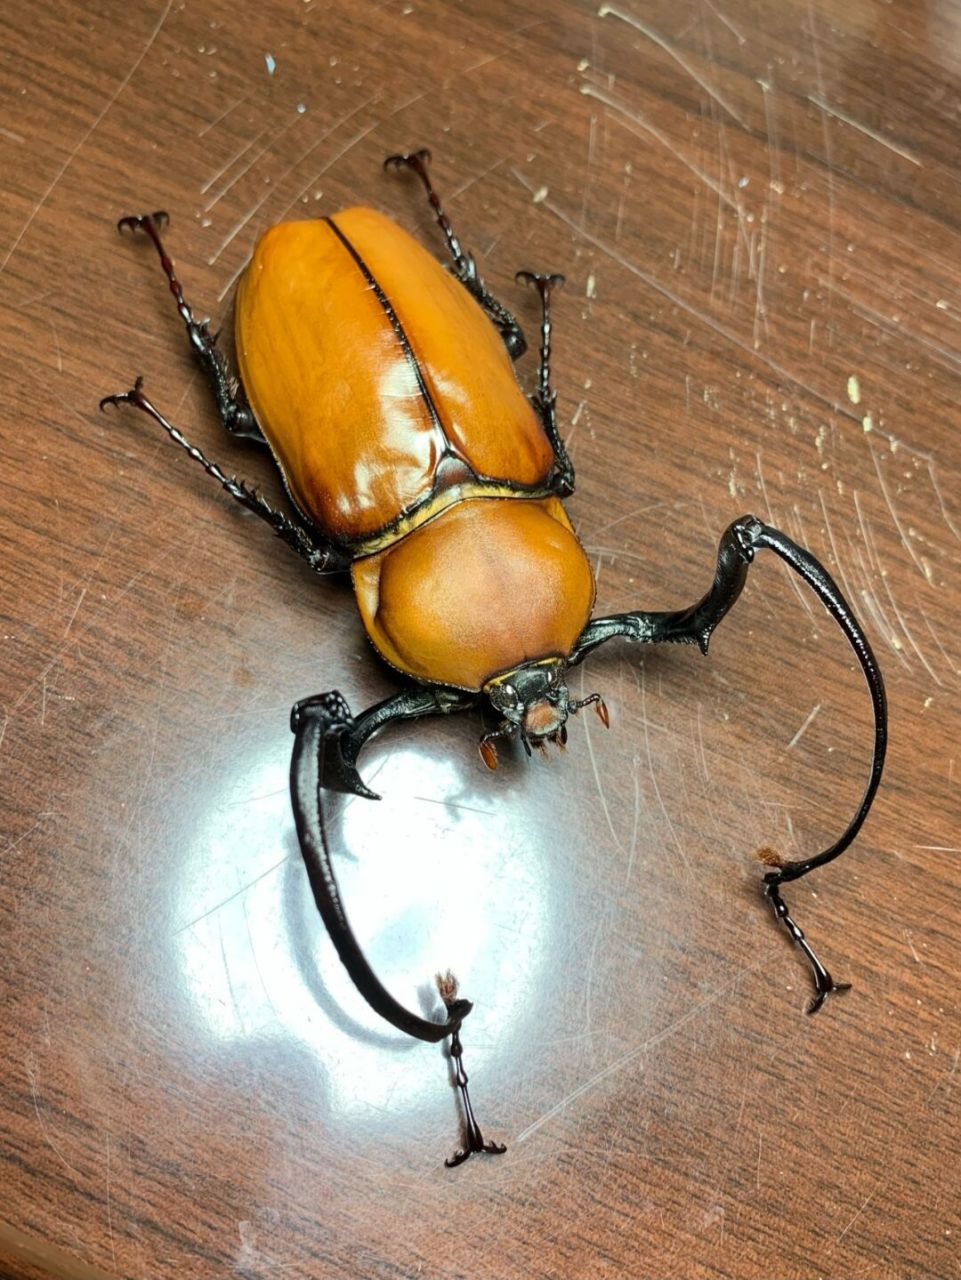 茶色长臂金龟 euchirus longimanus 茶色长臂金龟,成虫长体50